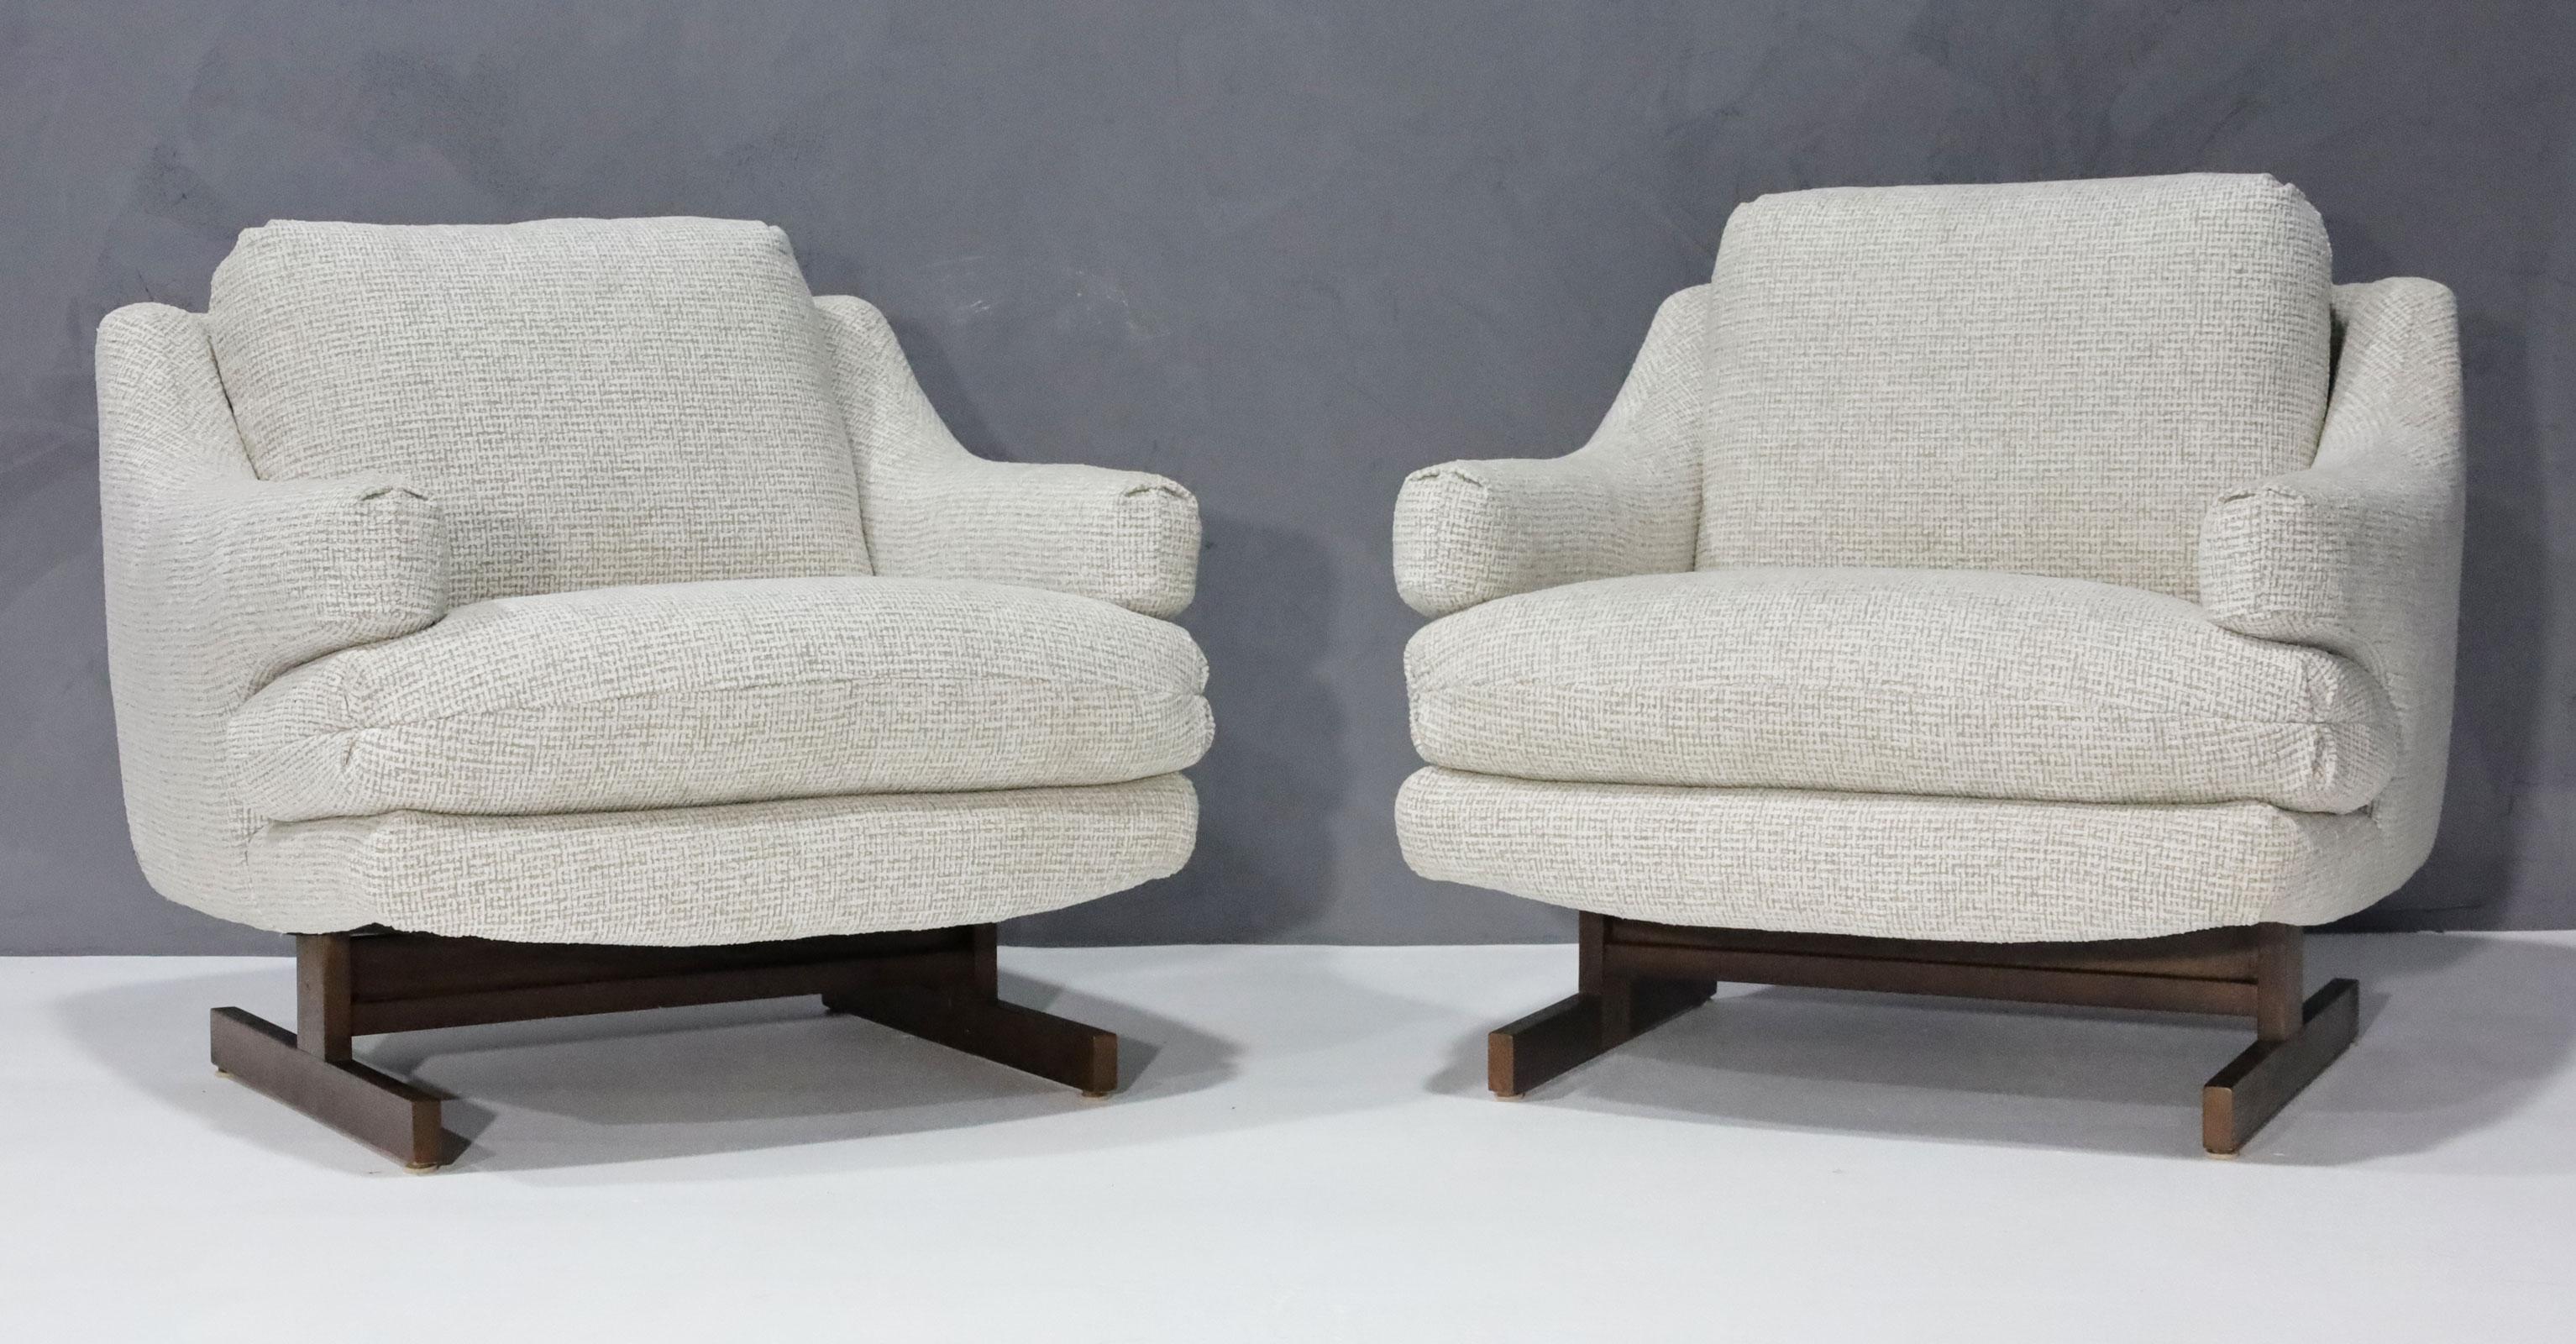 Ein ziemlich seltener Entwurf im Stil von Milo Baughman von O. B. Solie für Bernhardt/Flair. Sie sind neu gepolstert mit einem hochwertigen Chenille-Stoff. Die Sockel sind aus Nussbaumholz und haben eine T-Fuß-Konfiguration. Die Stühle sind sehr